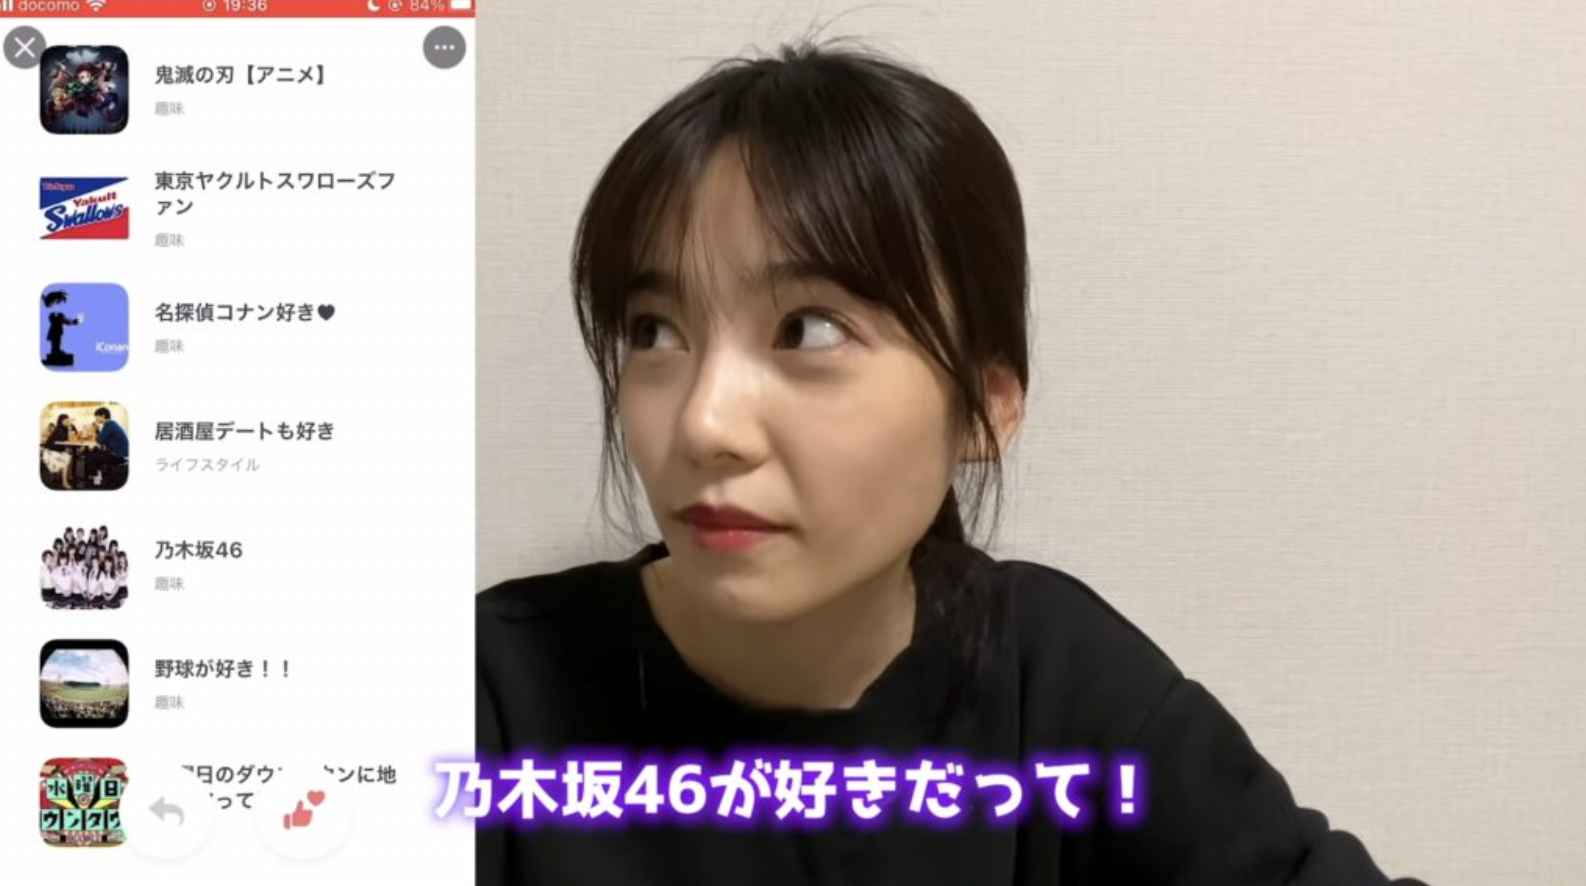 YouTubeチャンネルぱるるーむで島崎遥香がマッチングアプリを利用している写真